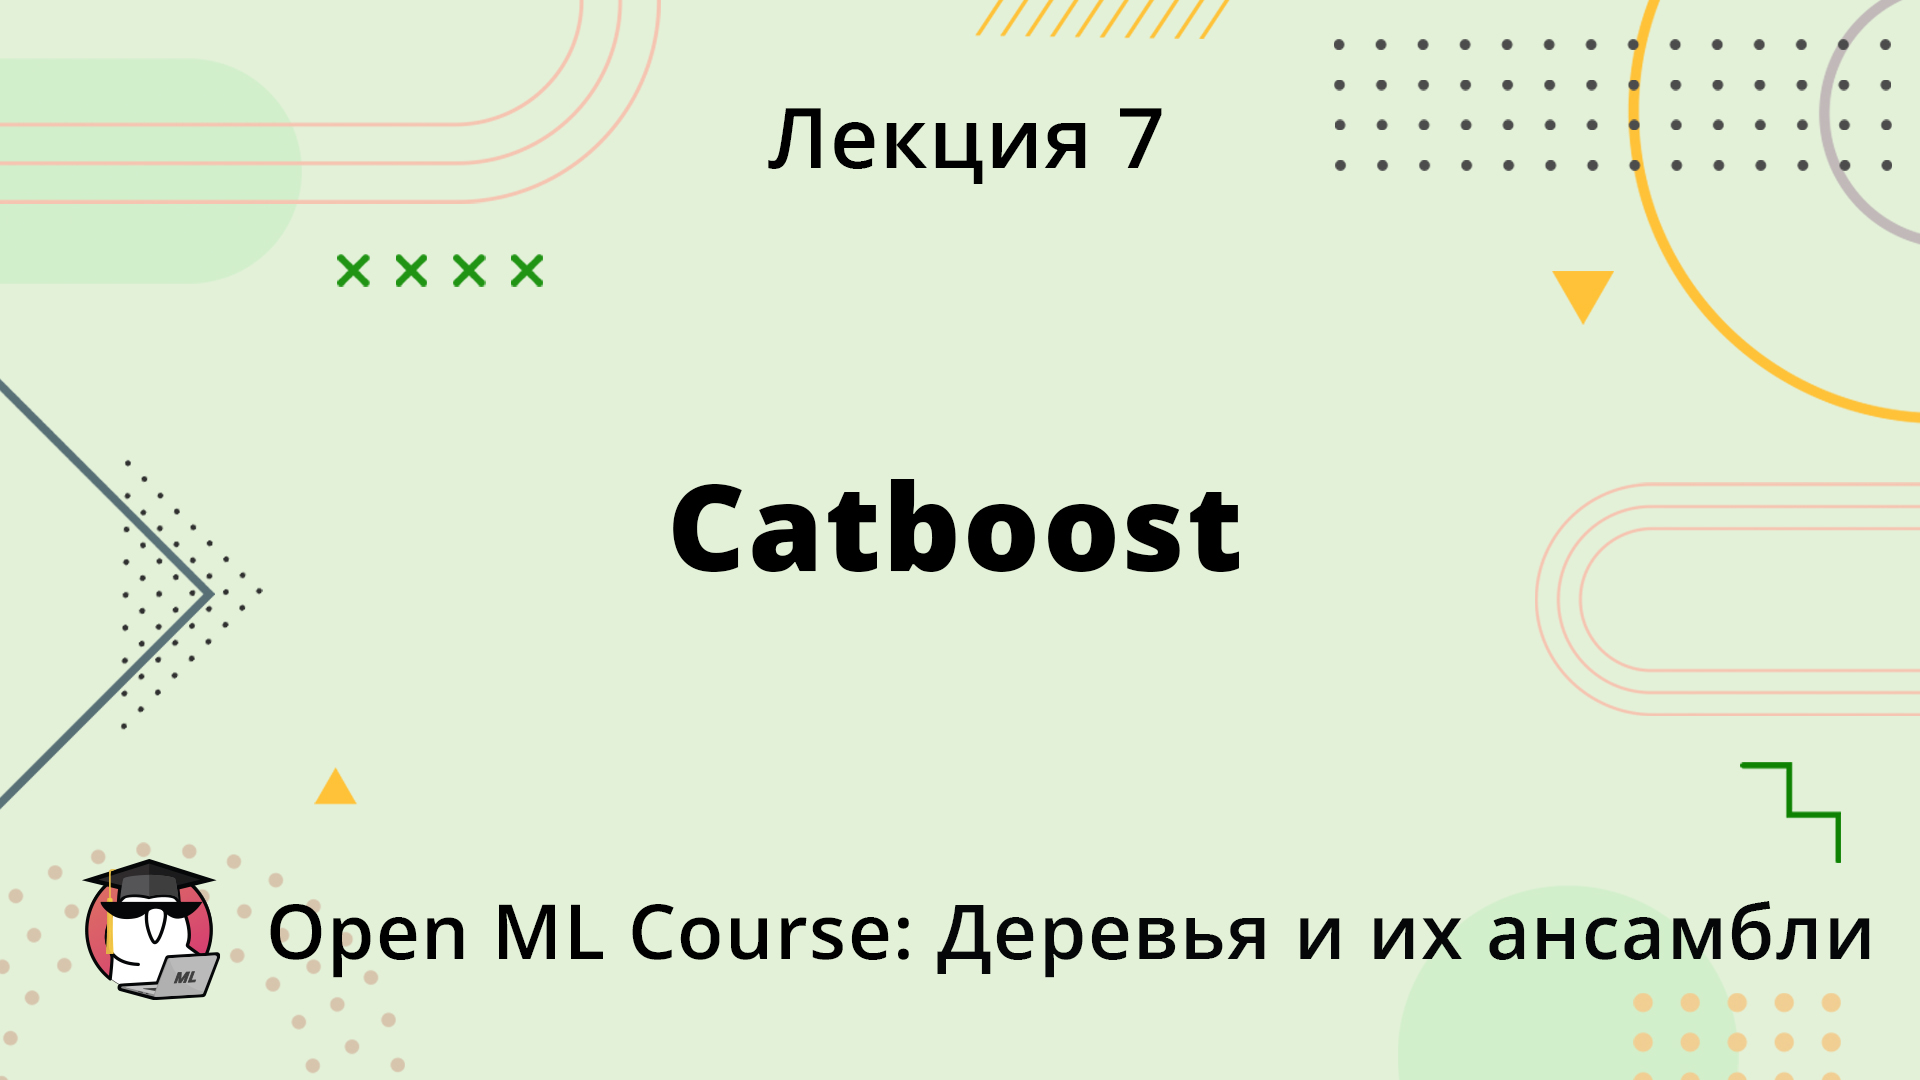 Catboost